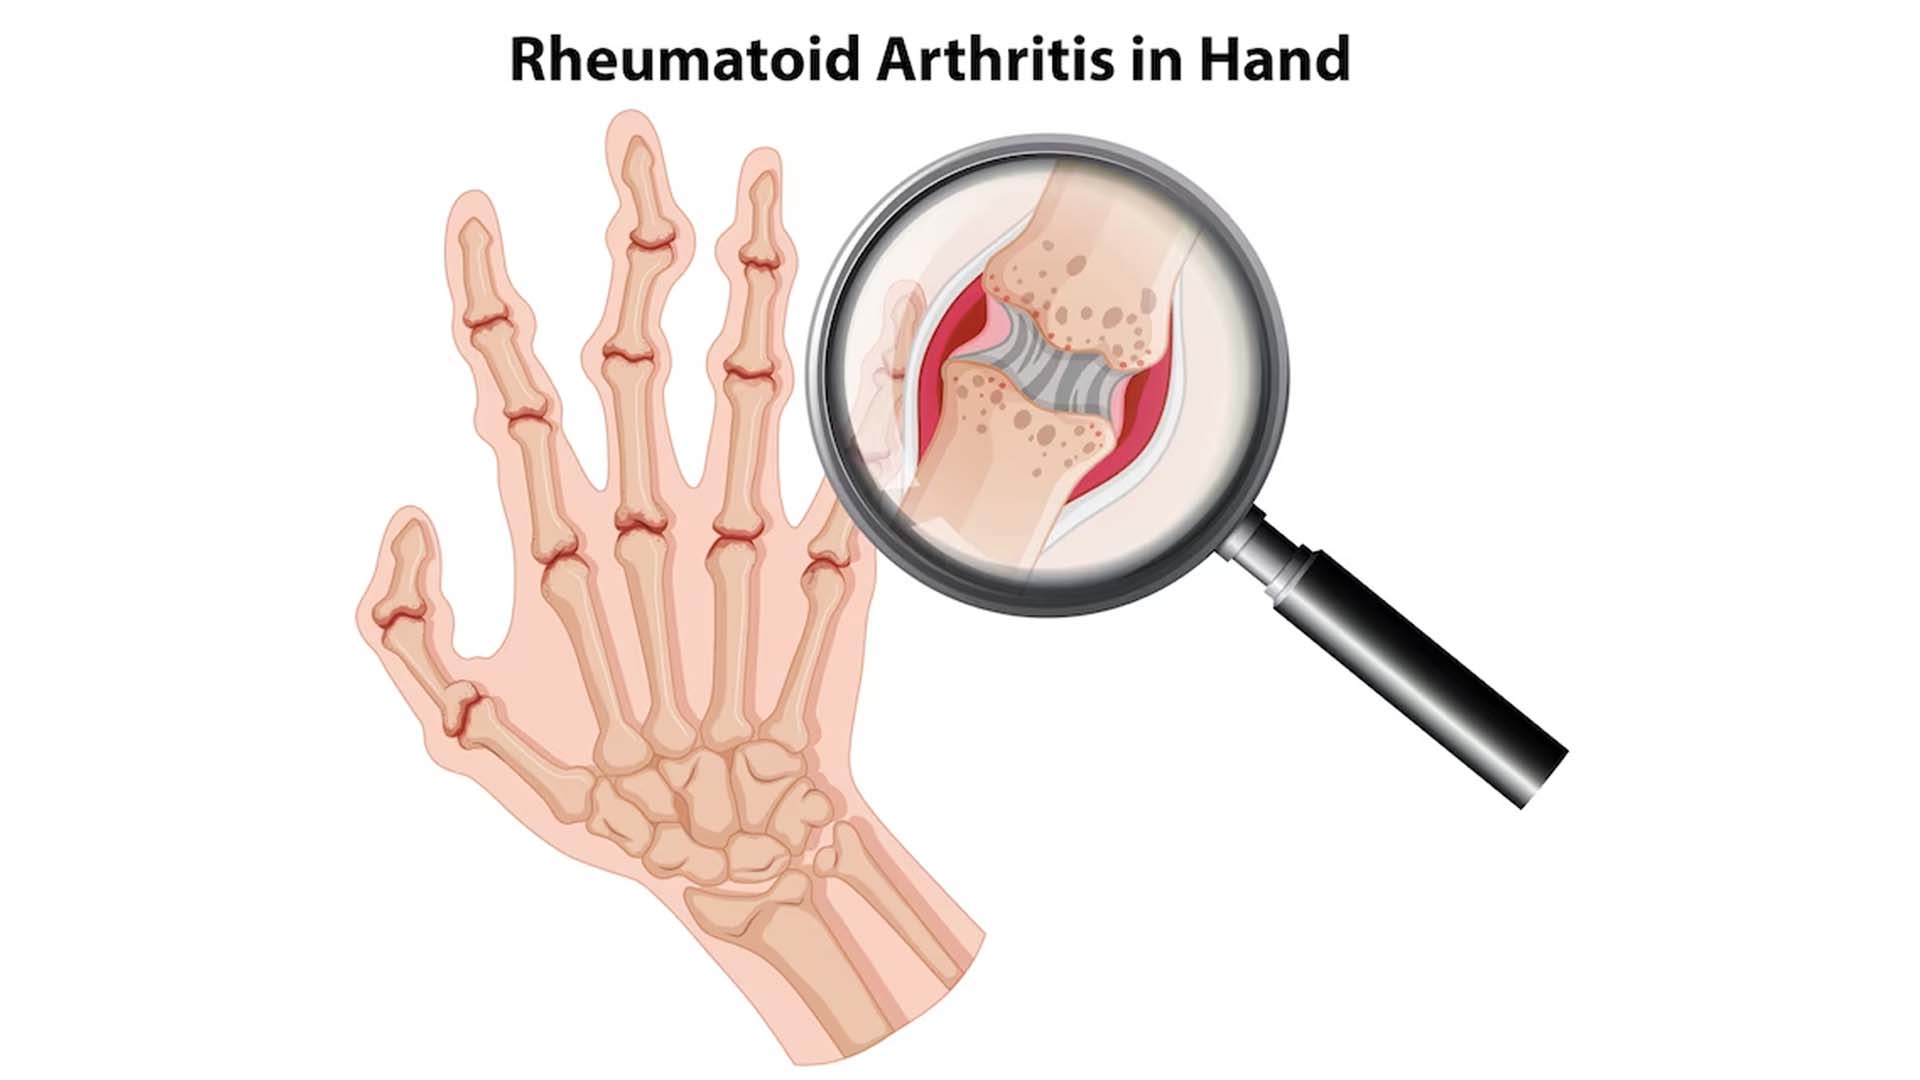 Rheumatoid Arthritis in hand